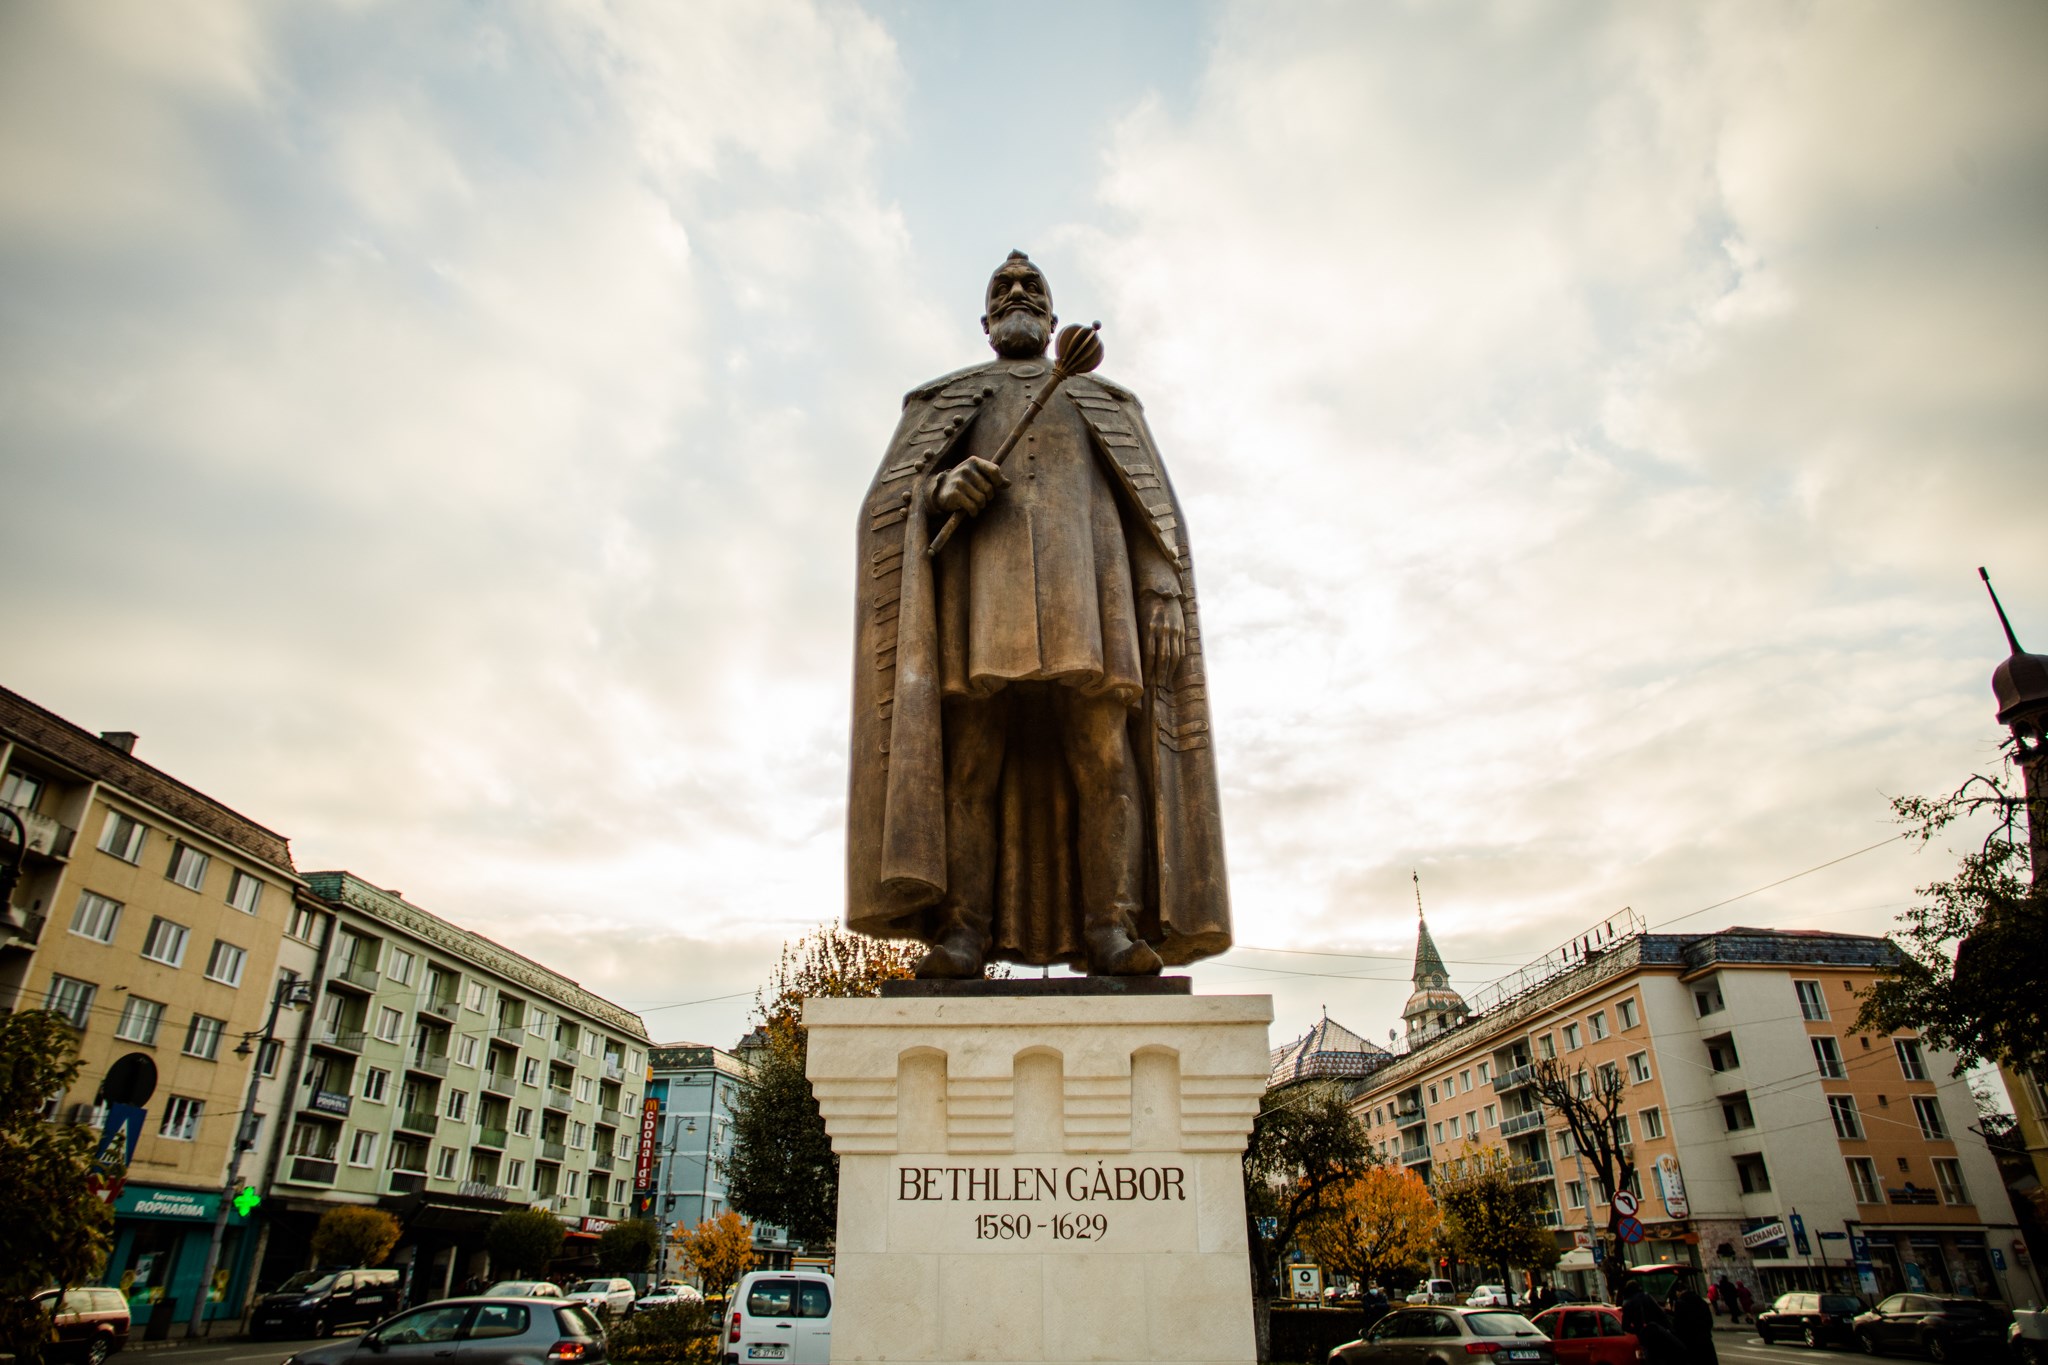 Socha transylvánského prince Bethlena slavnostně otevřena v Marosvásárhely Targu Mures